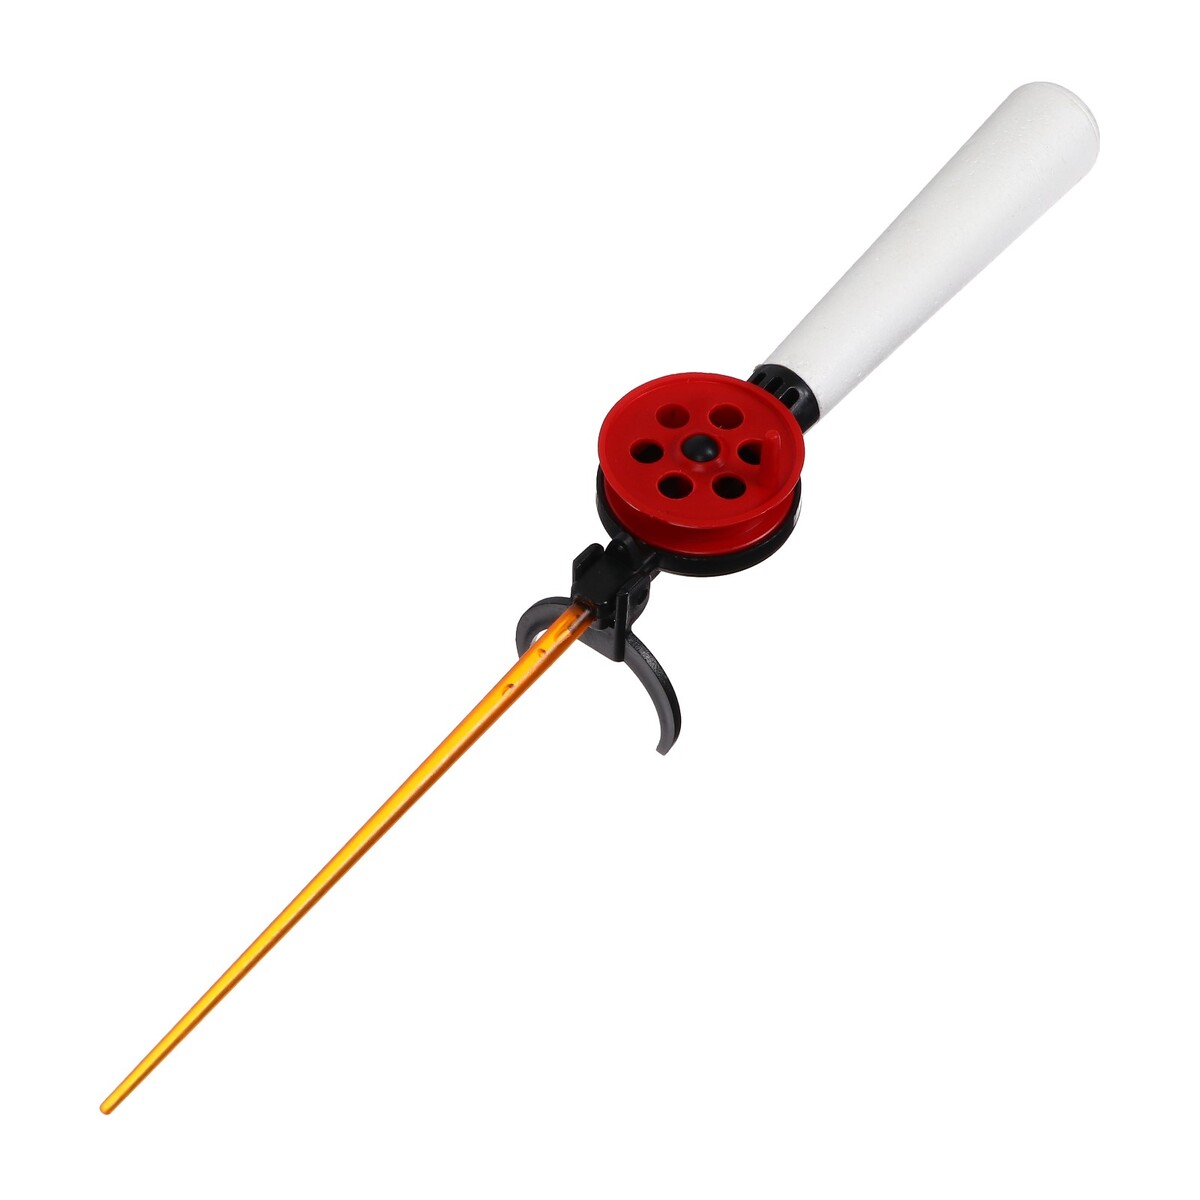 Удочка зимняя, ручка пенопласт длиной 130 мм, hfb-9b удочка зимняя ручка неопрен длина 33 см красный hfb 34